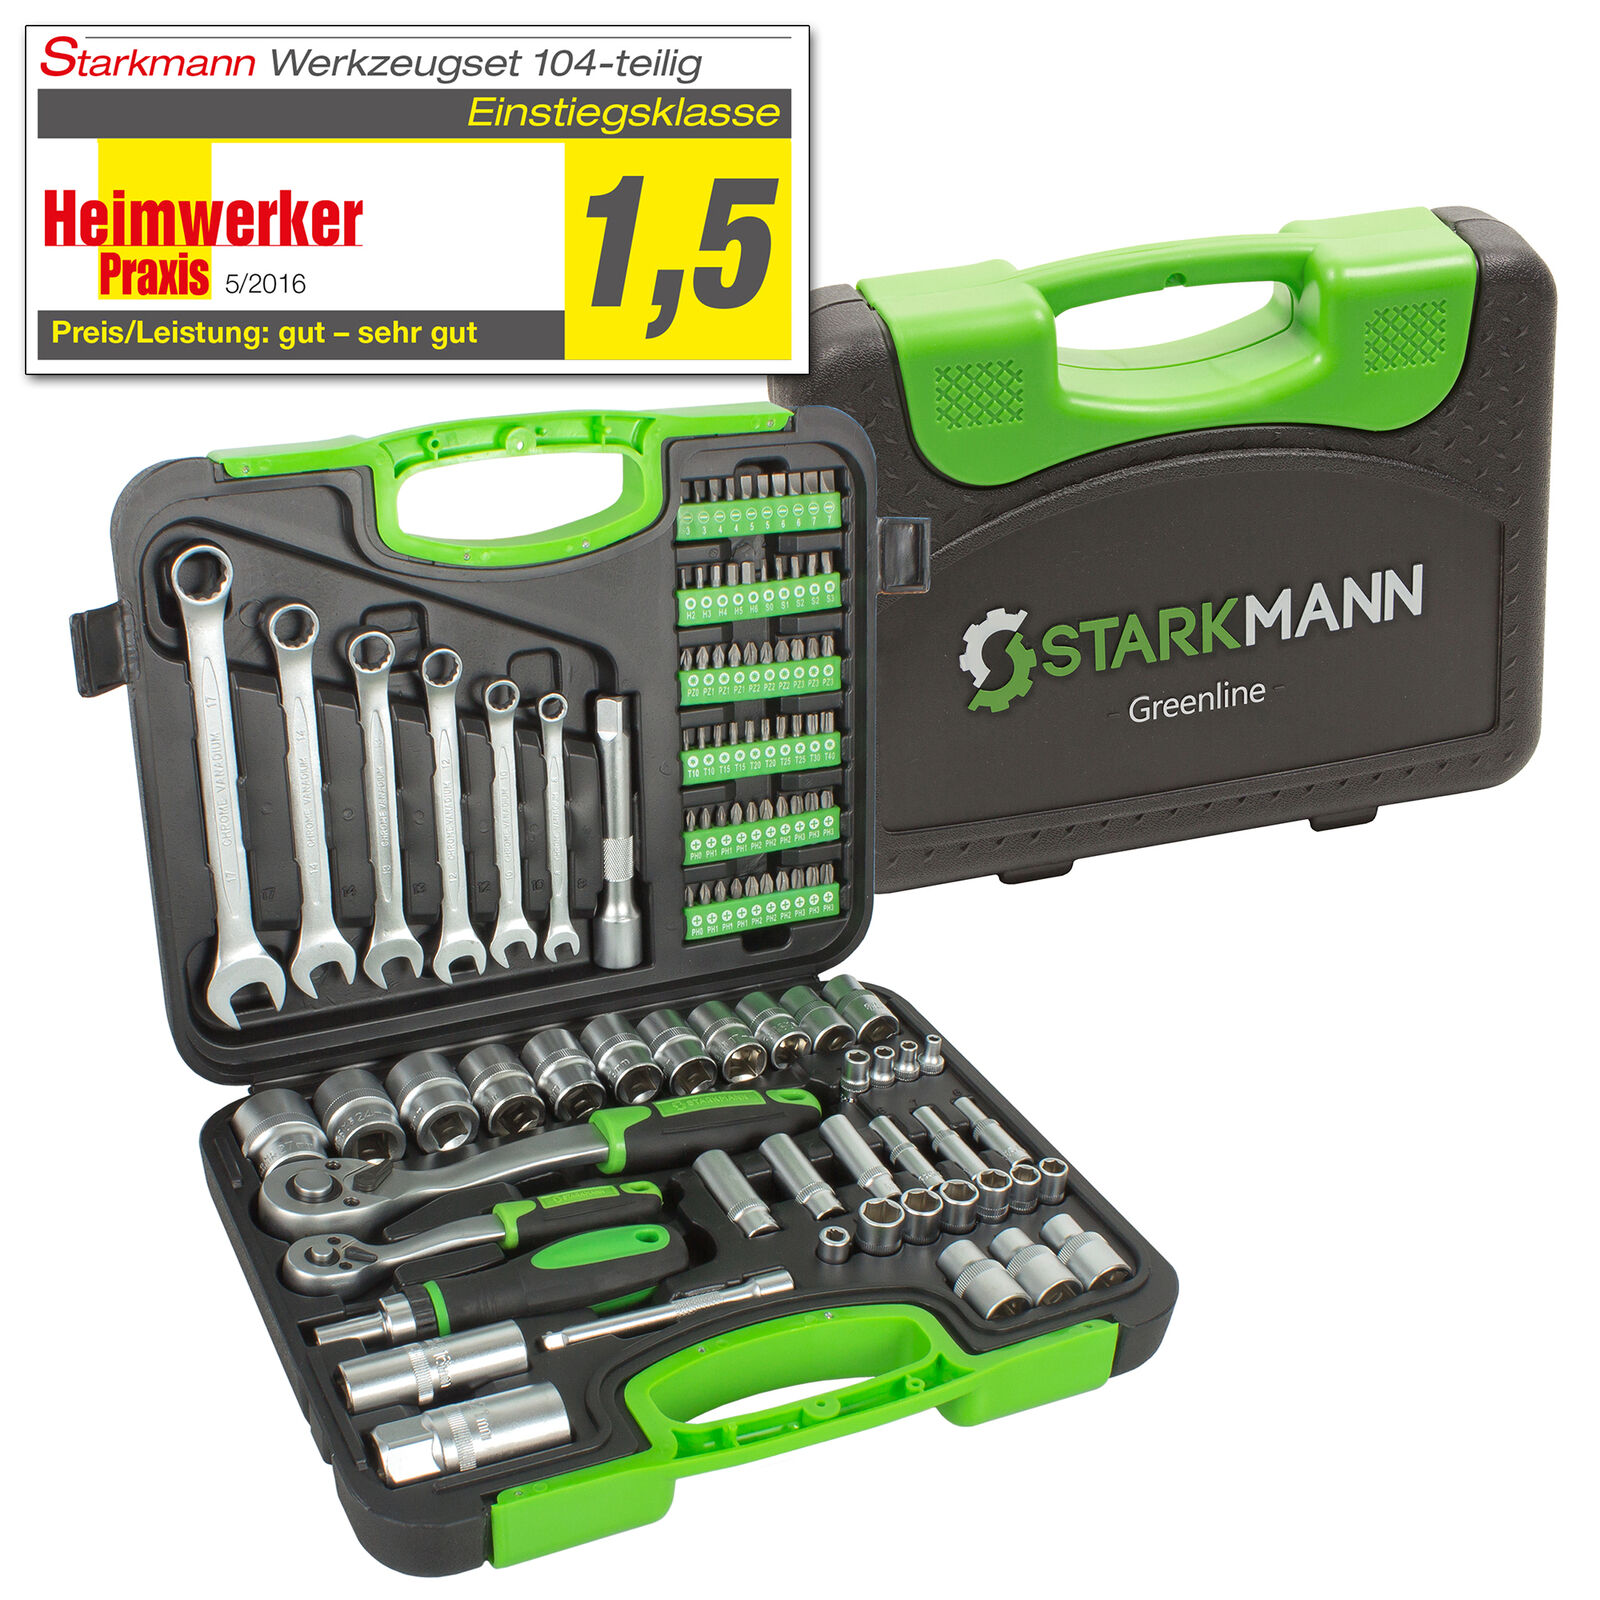 Bild zu 104-teiliger Starkmann Greenline Werkzeugkoffer für 34,99€ (Vergleich: 49,99€)